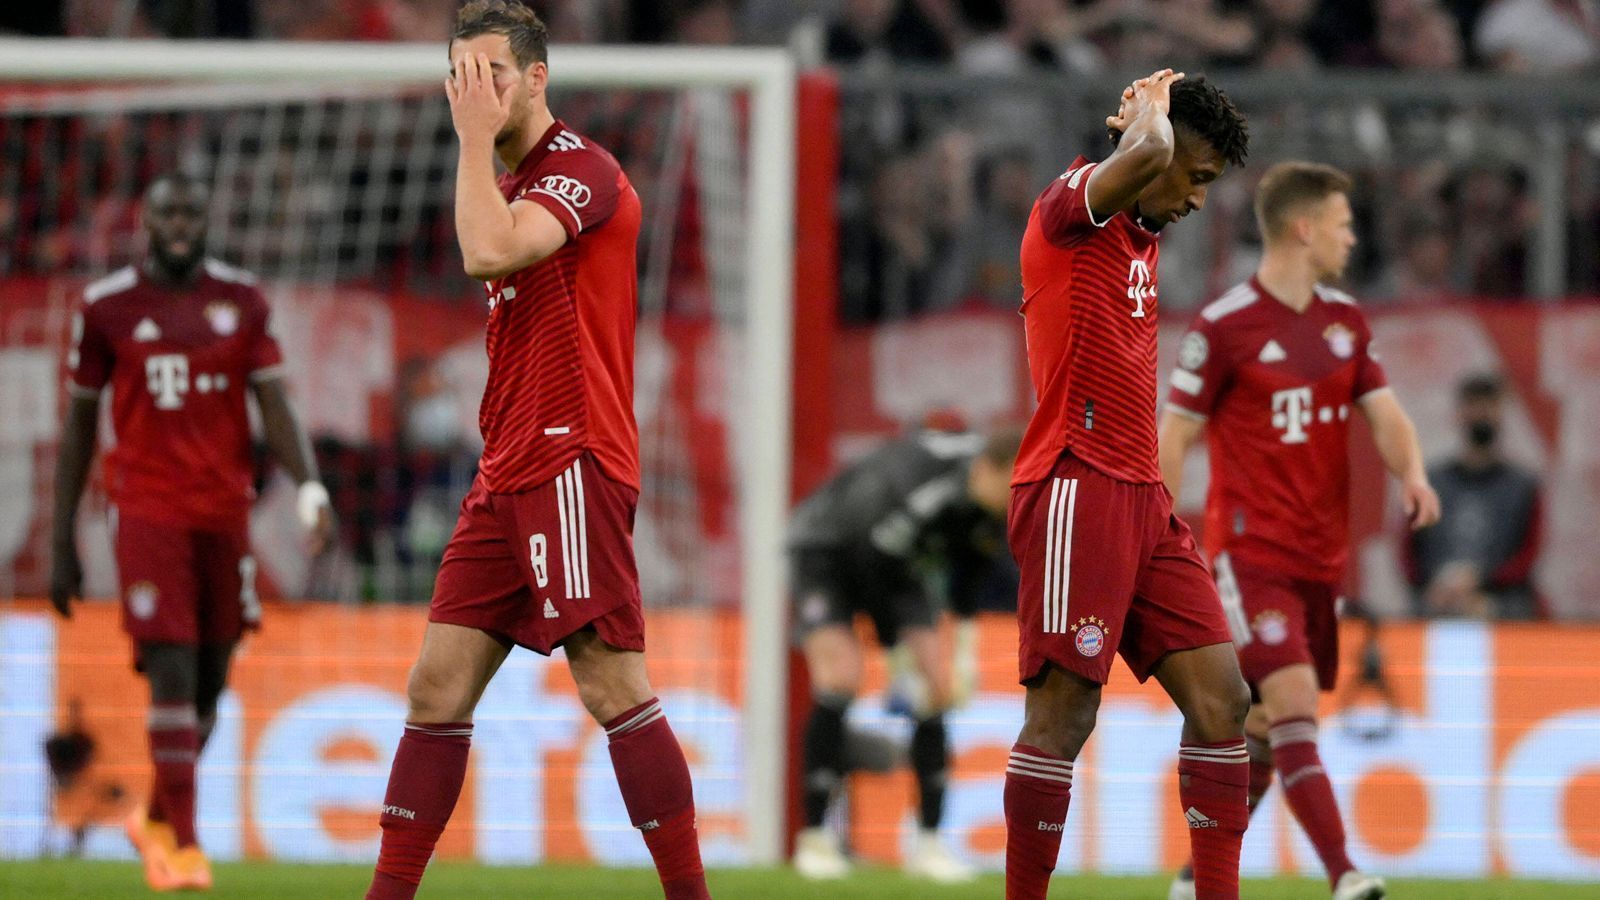 Champions League Die Stars des FC Bayern München in der Einzelkritik